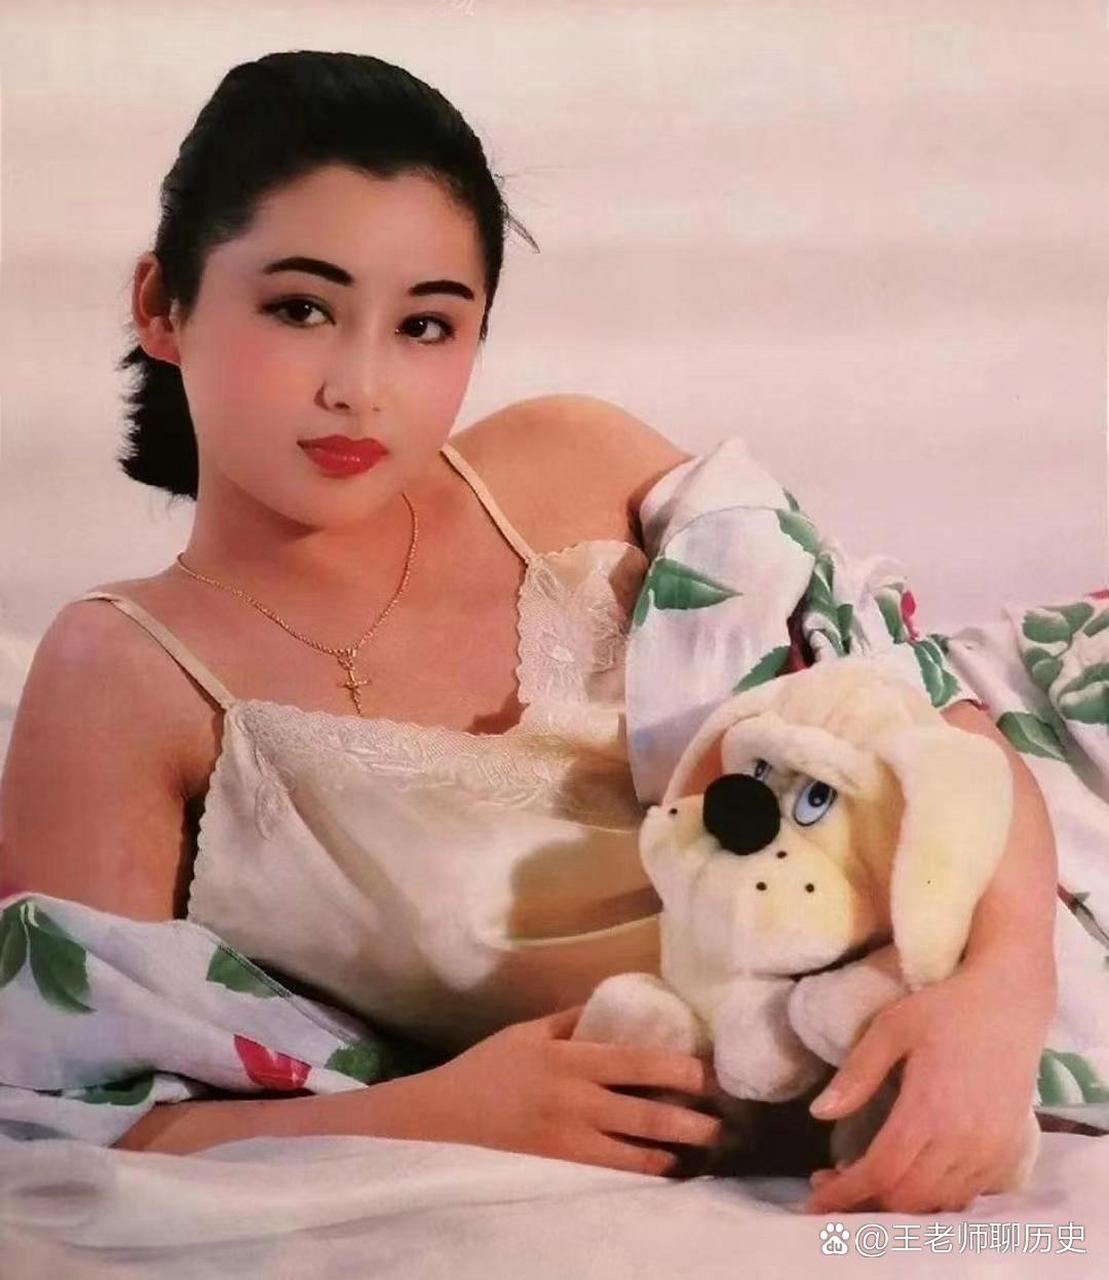 上世纪九十年代,大美女陈红年轻时的照片